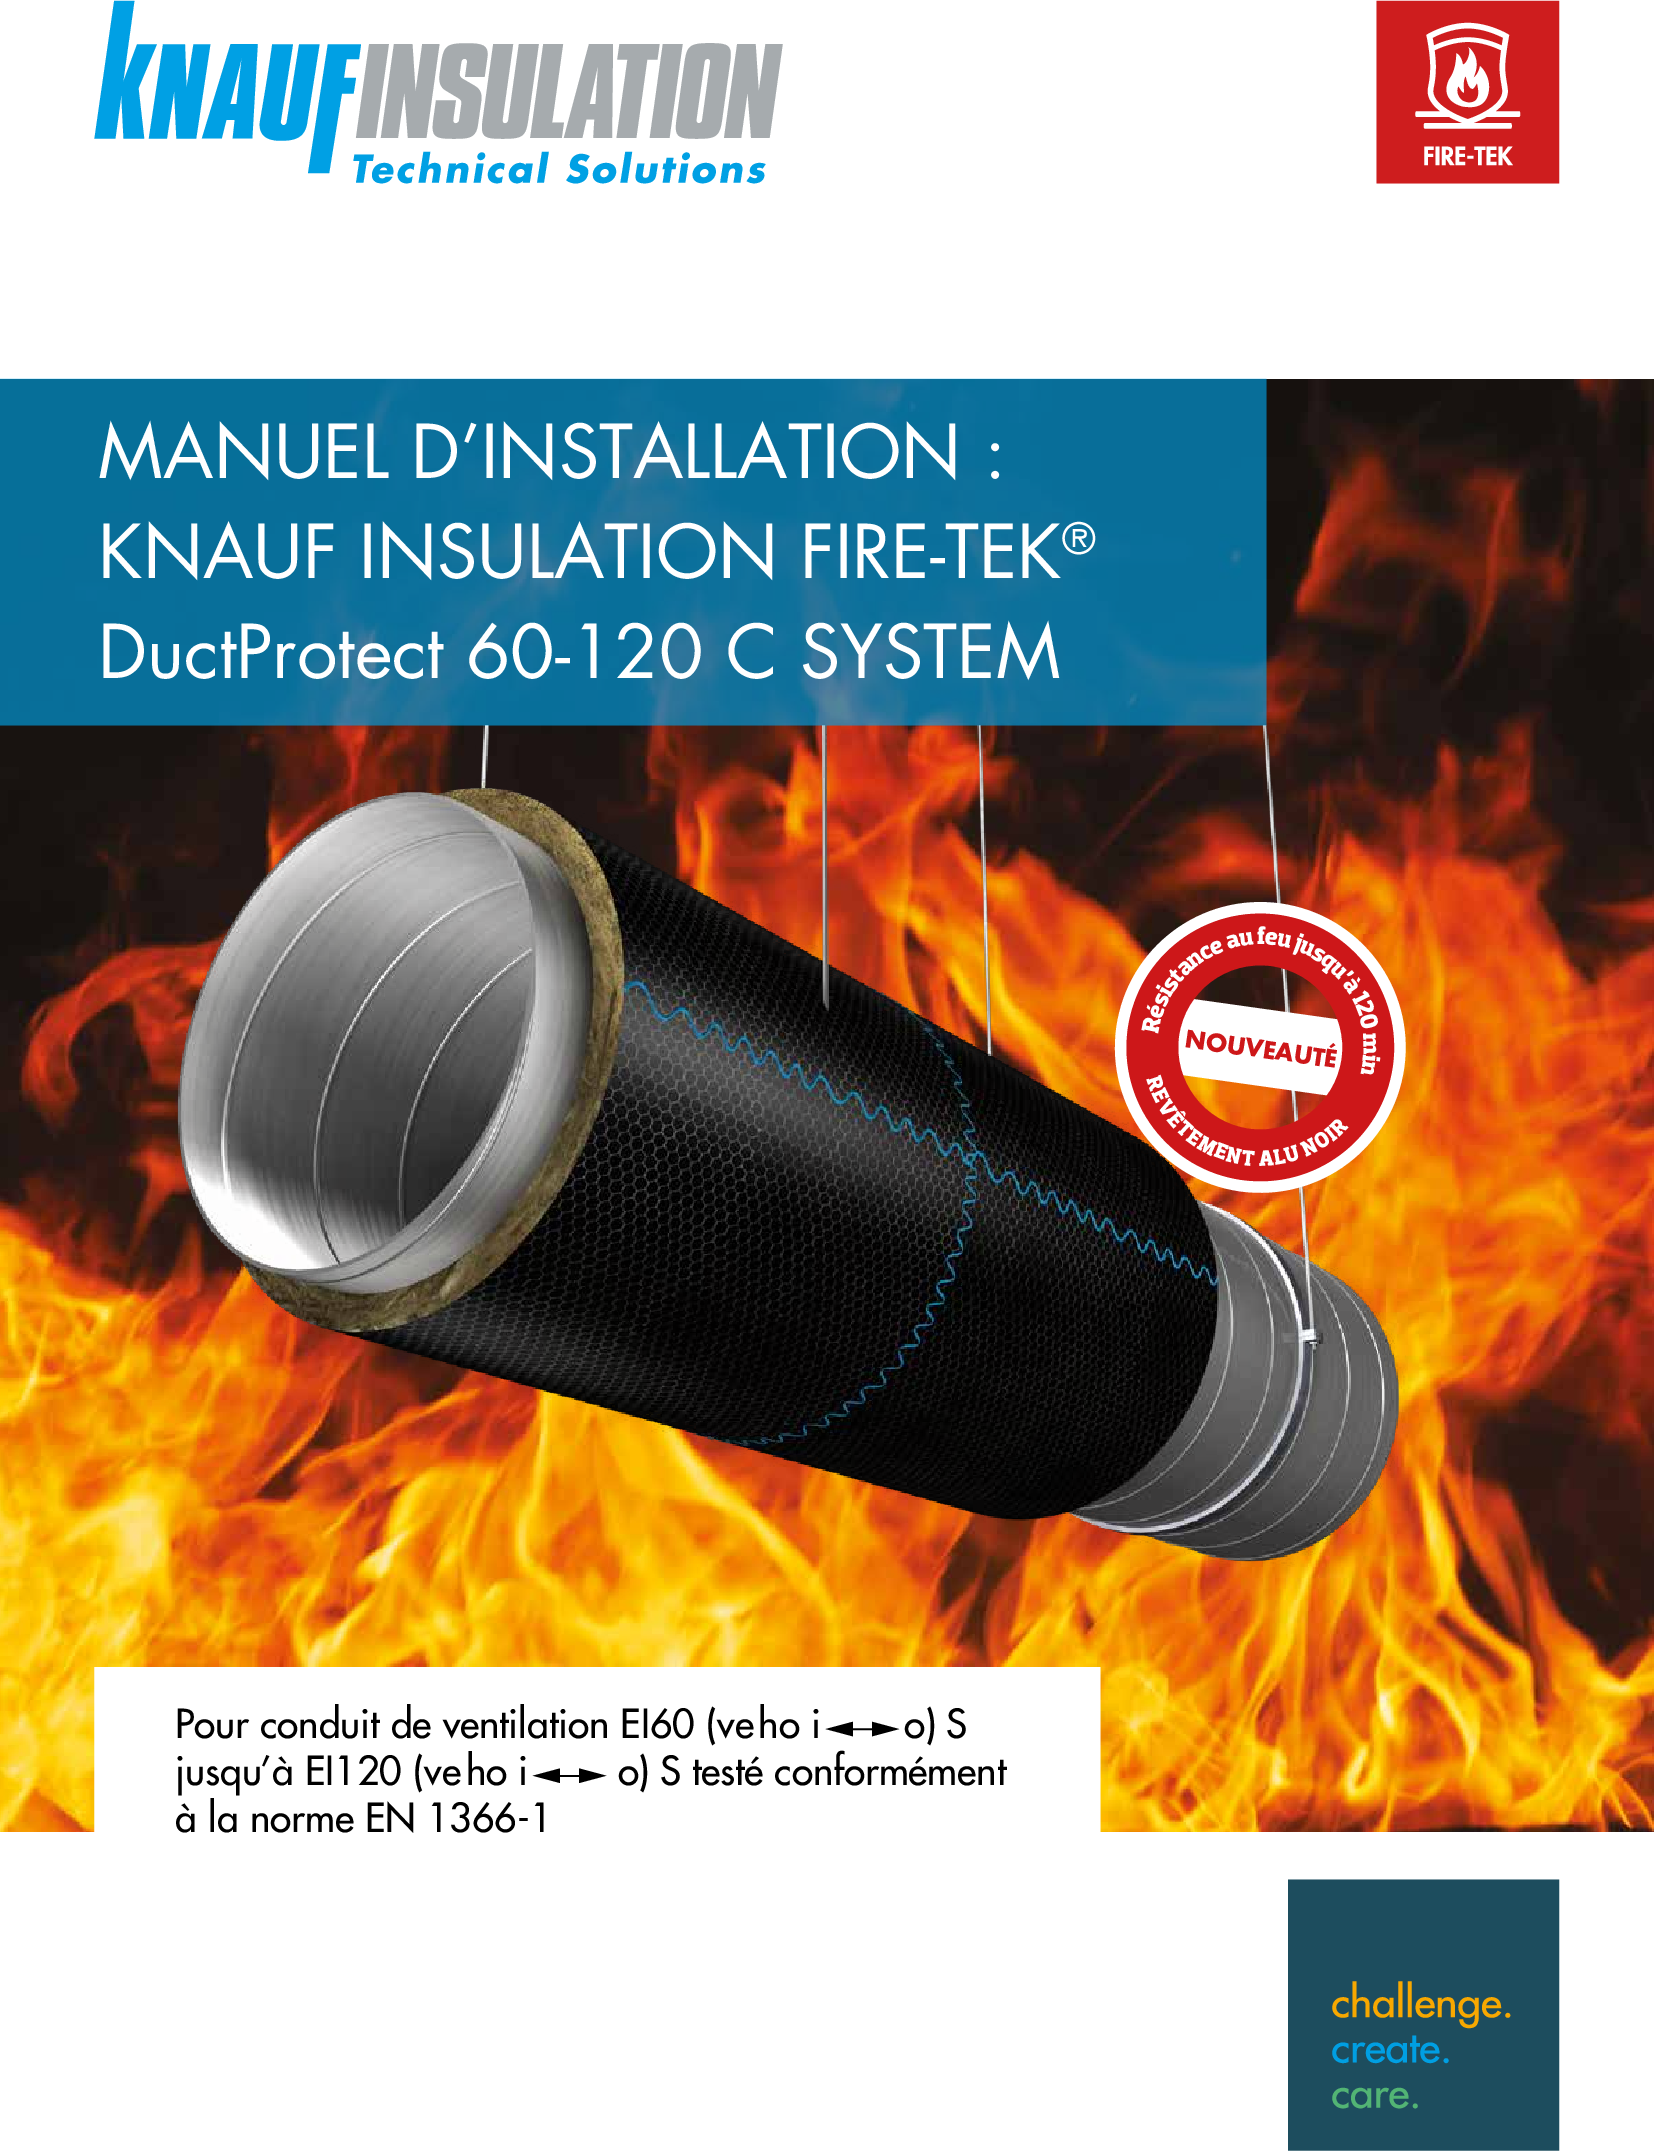 Fire-teK DuctProtect 30- 120 C SYSTEM - MANUEL D’INSTALLATION